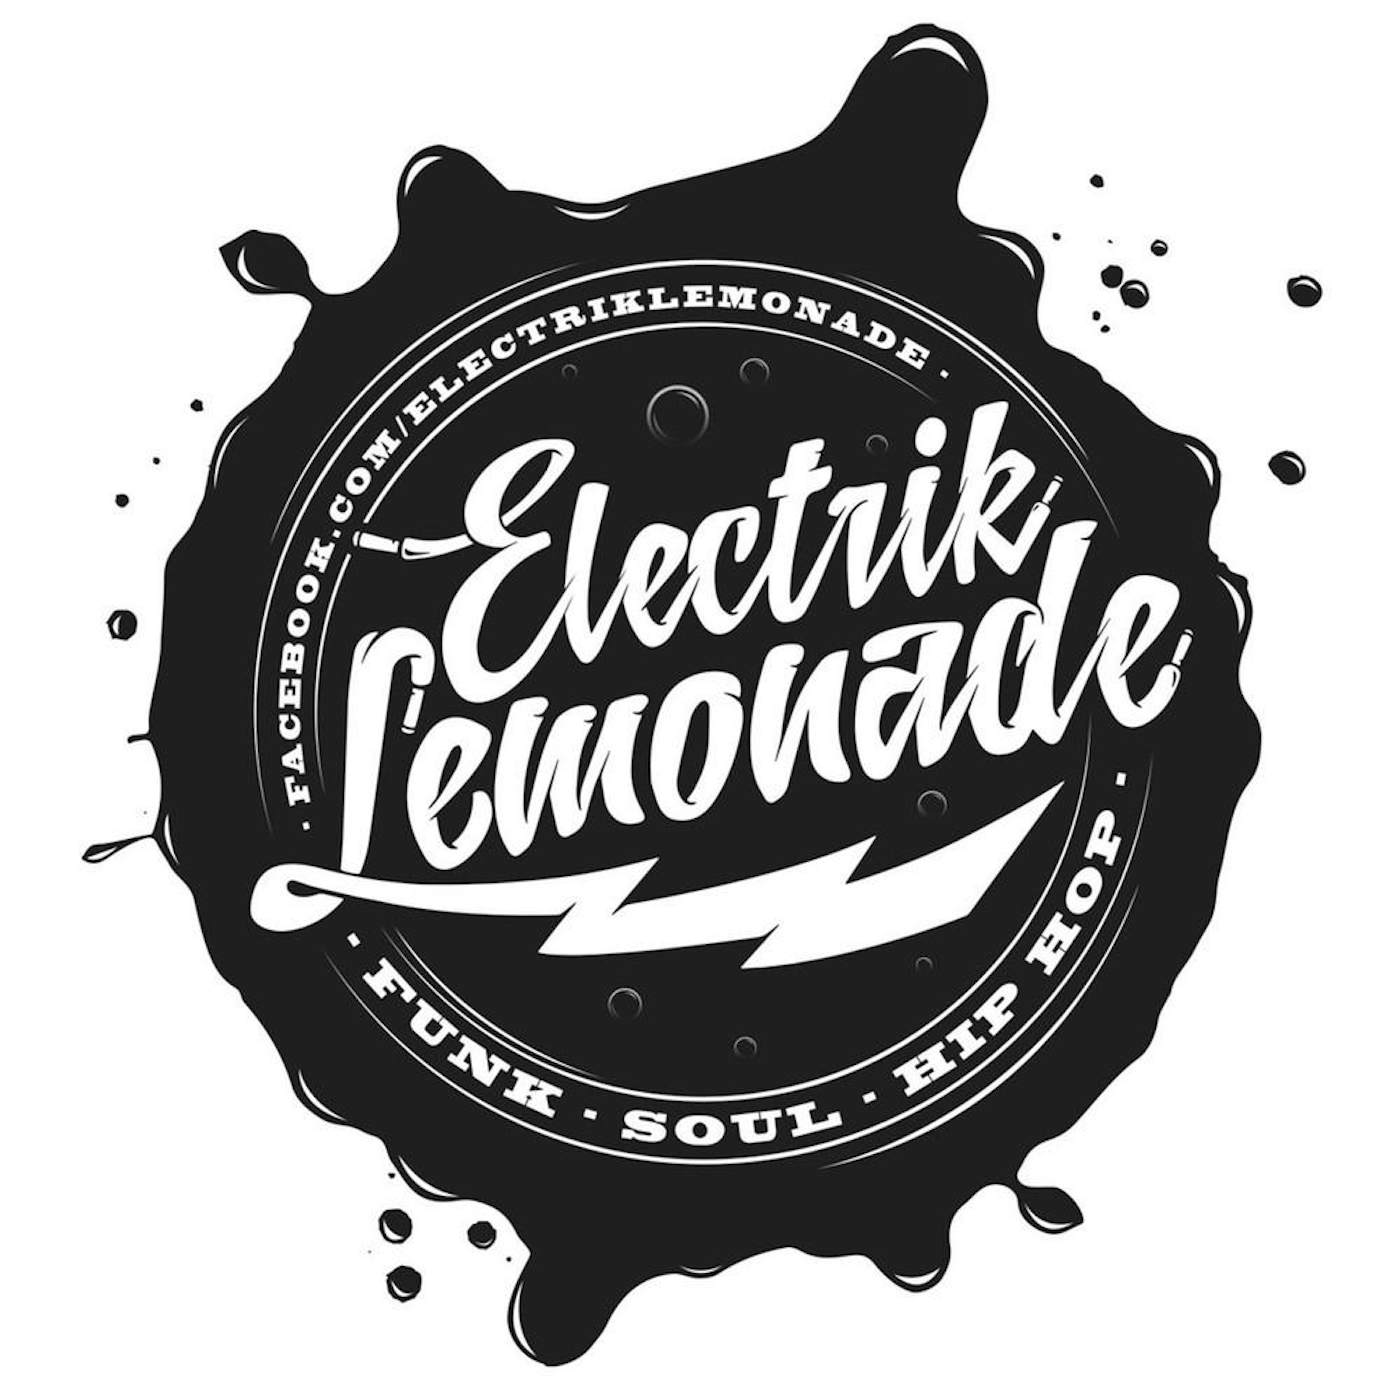 Electrik Lemonade